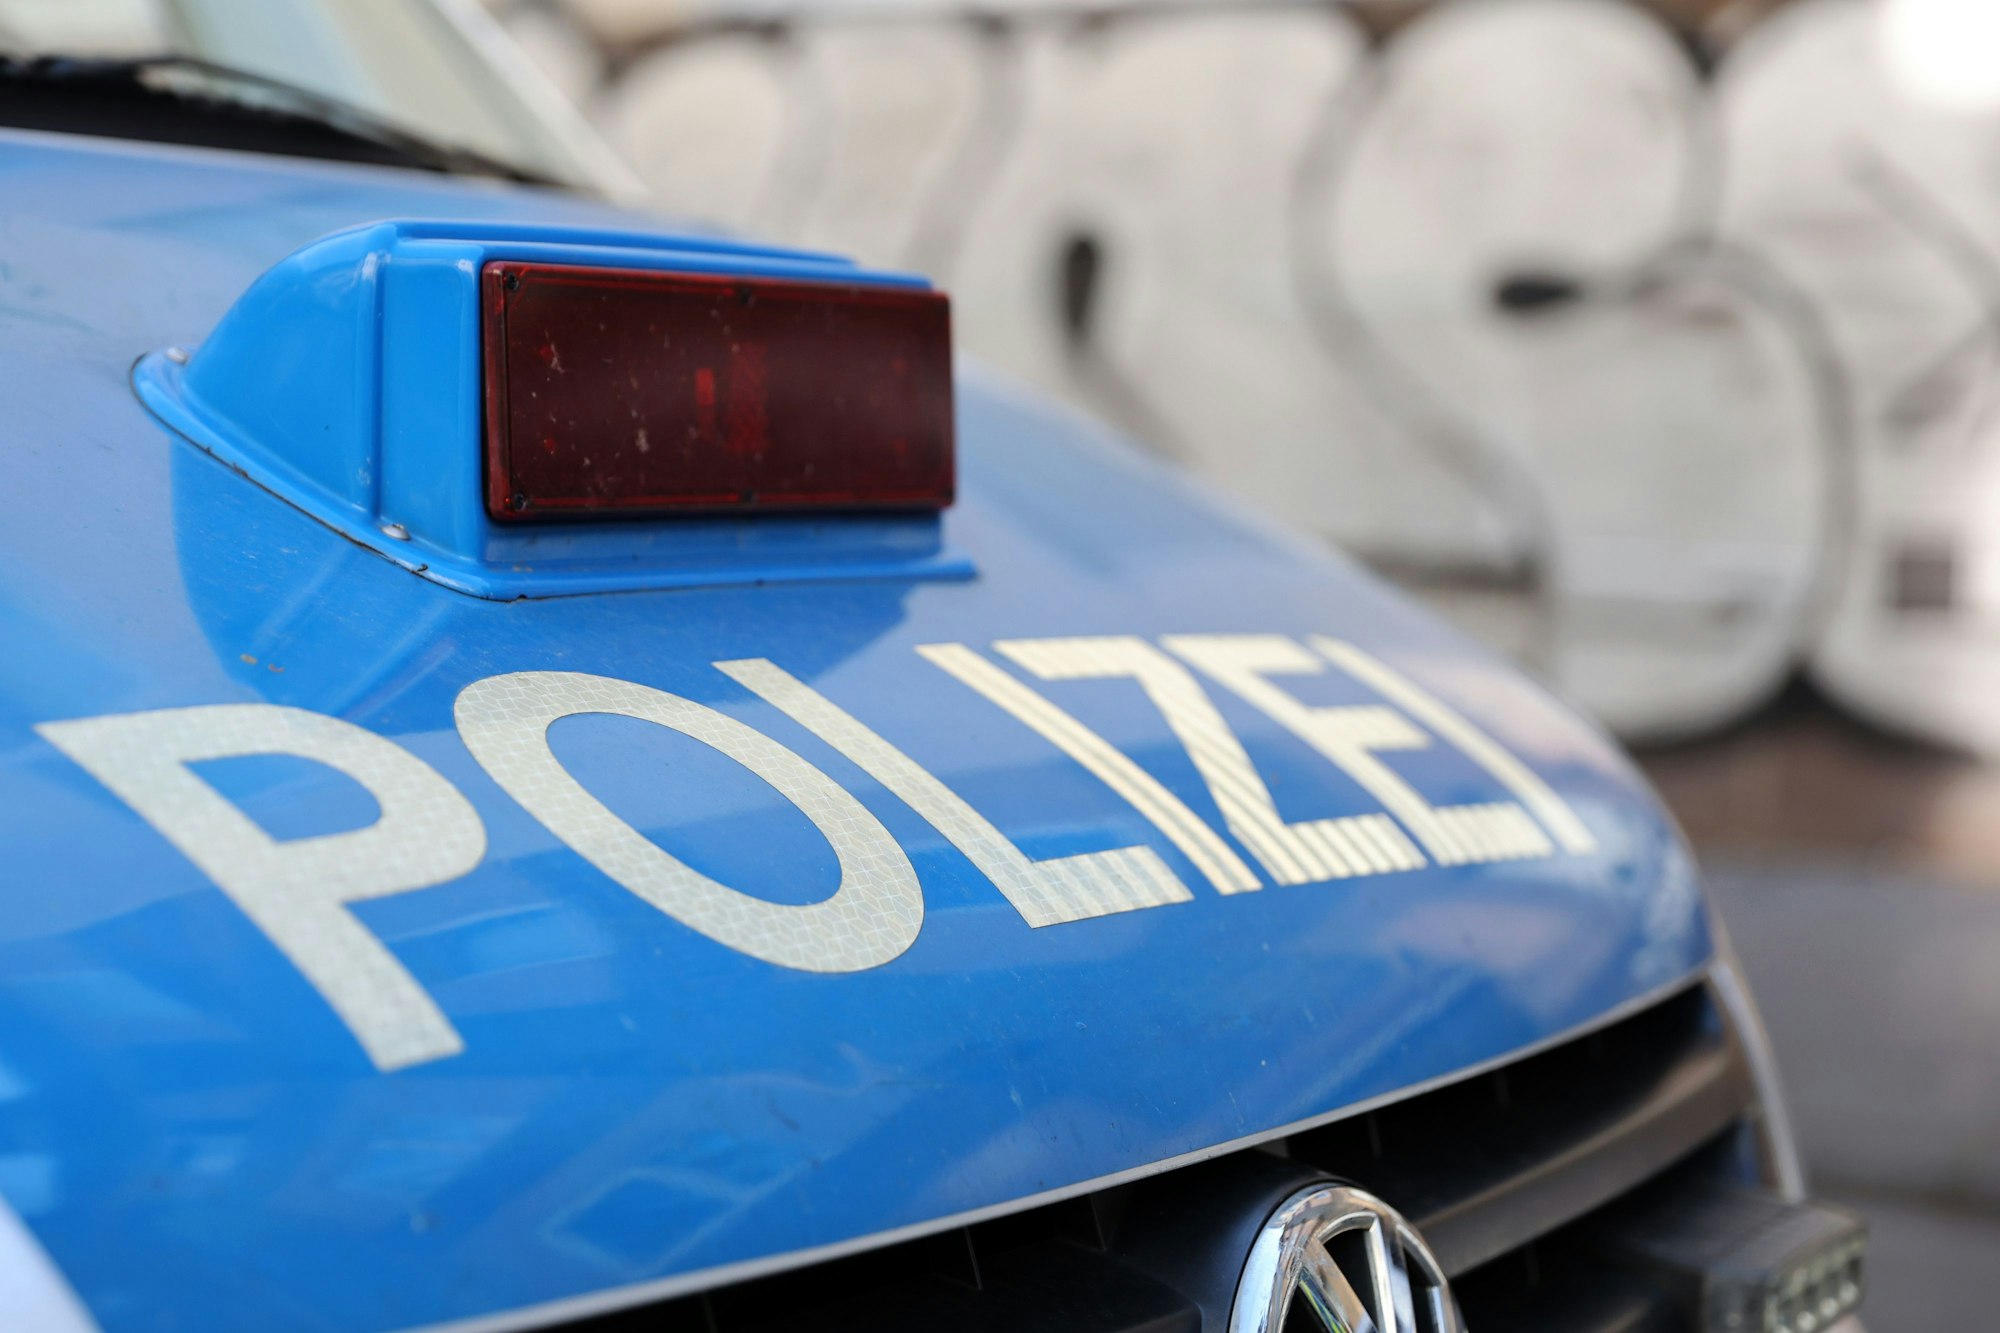 Ein Polizeiauto in Köln (Symbolbild)

